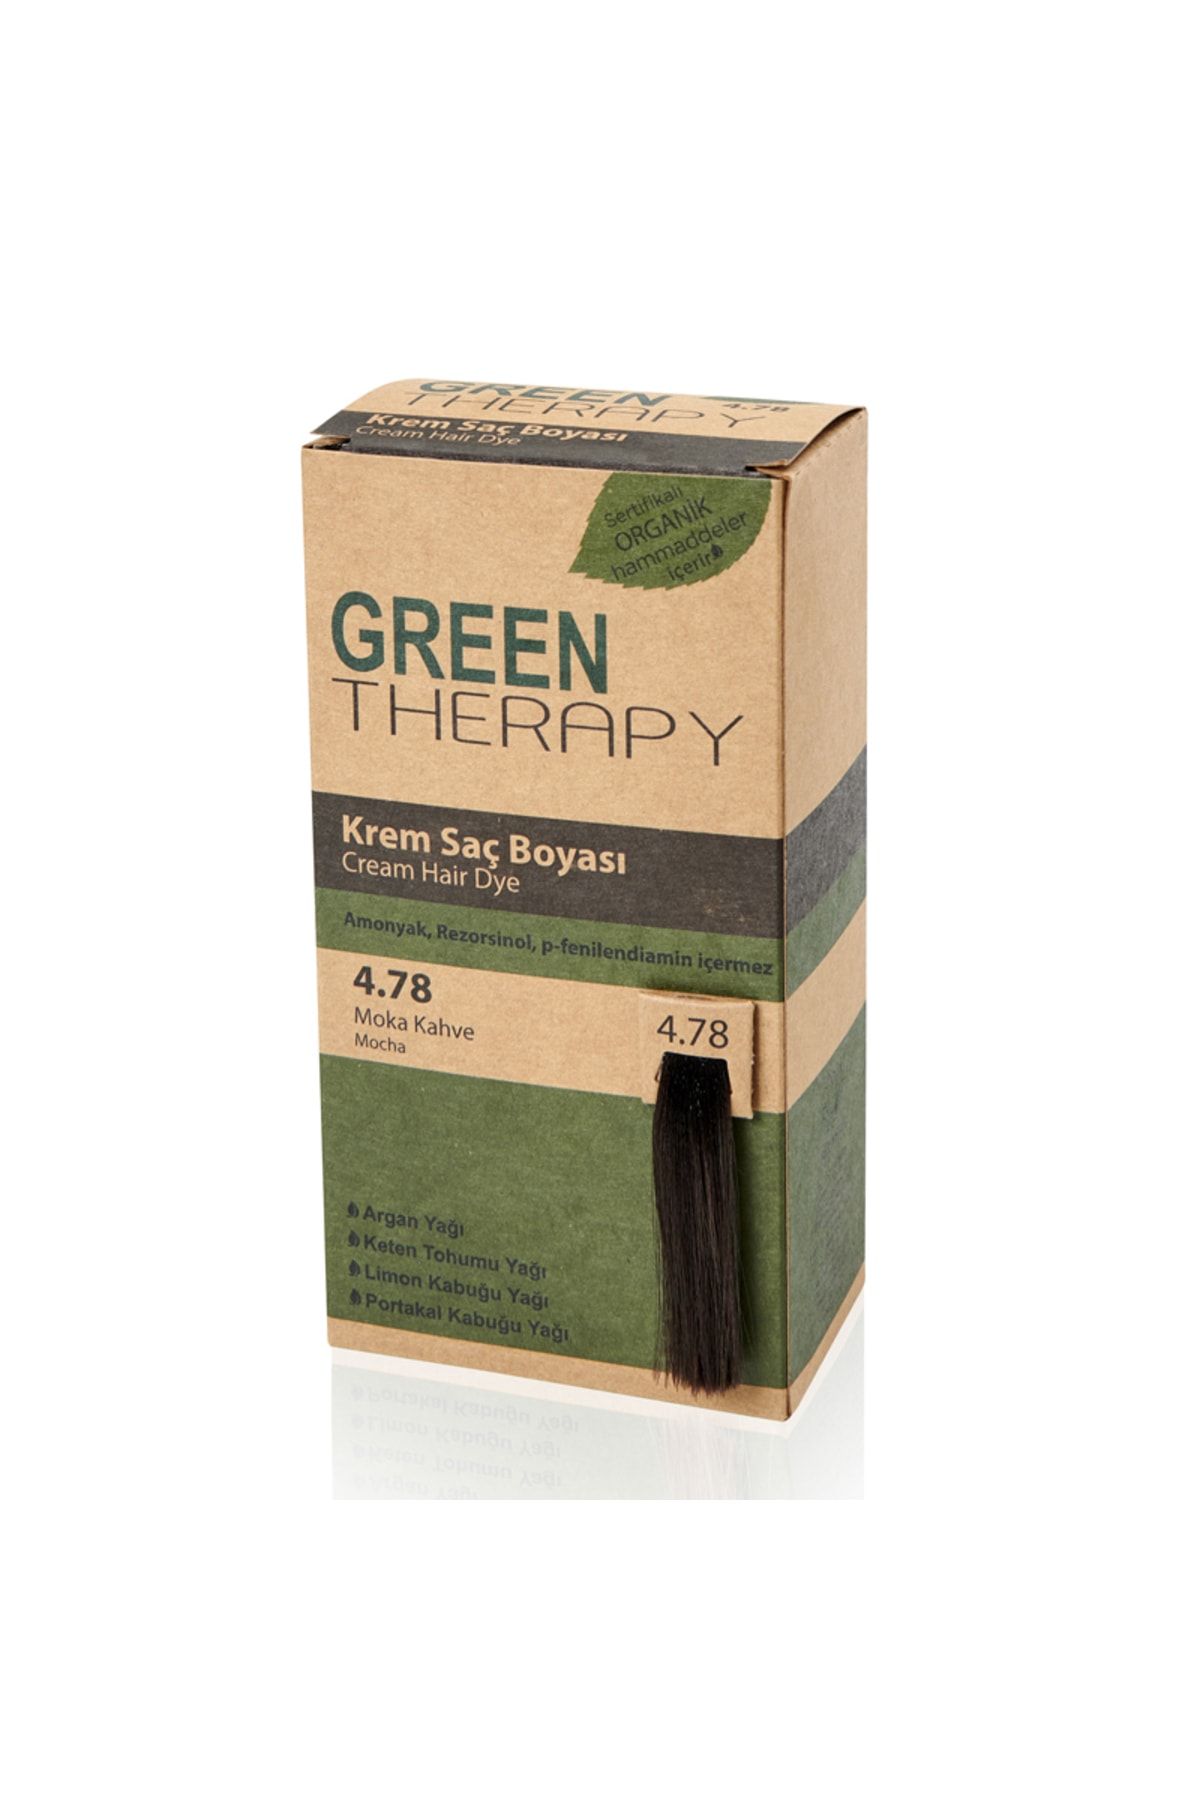 Green Therapy Krem Saç Boyası 4.78 Moka Kahve